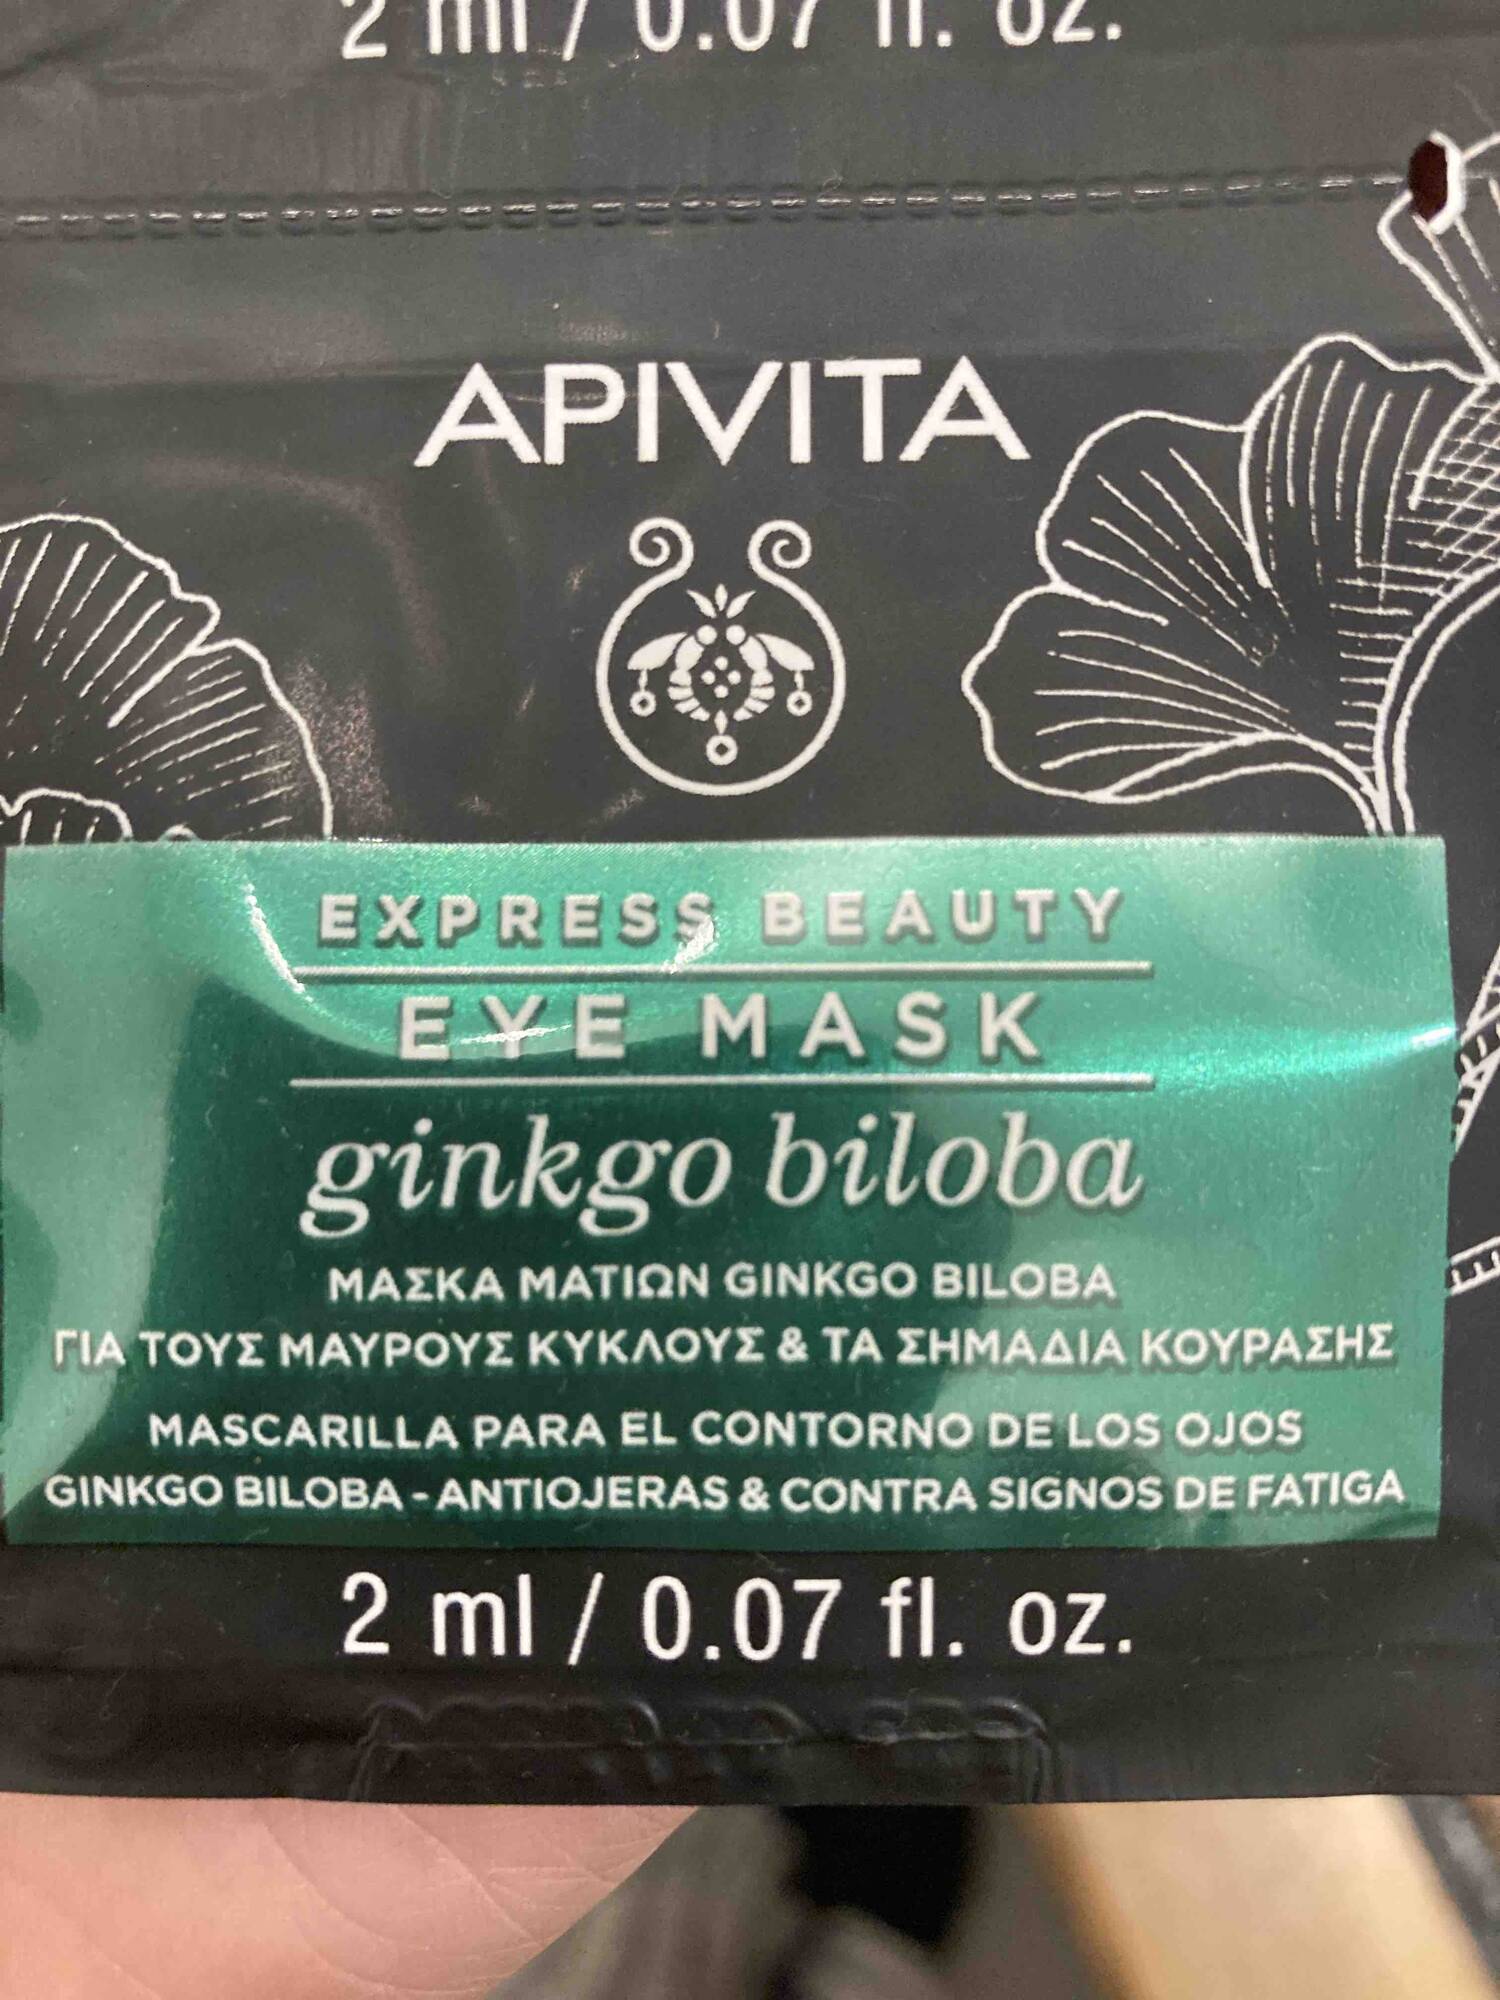 APIVITA - Eye mask Ginkgo biloba